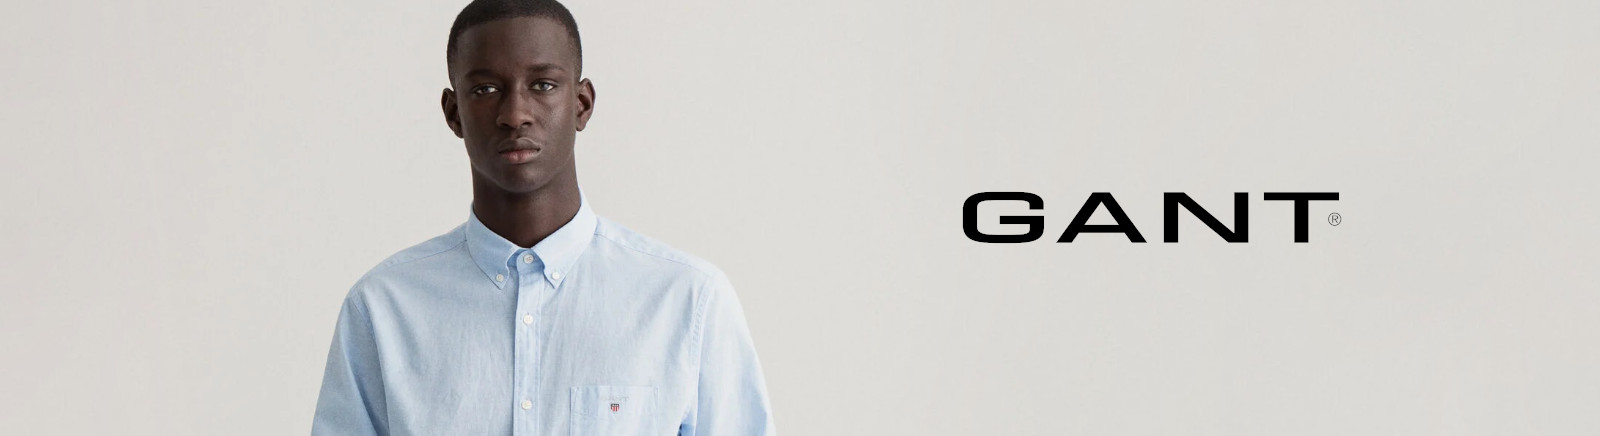 Gant Sneaker für Damen im Online-Shop von GISY kaufen